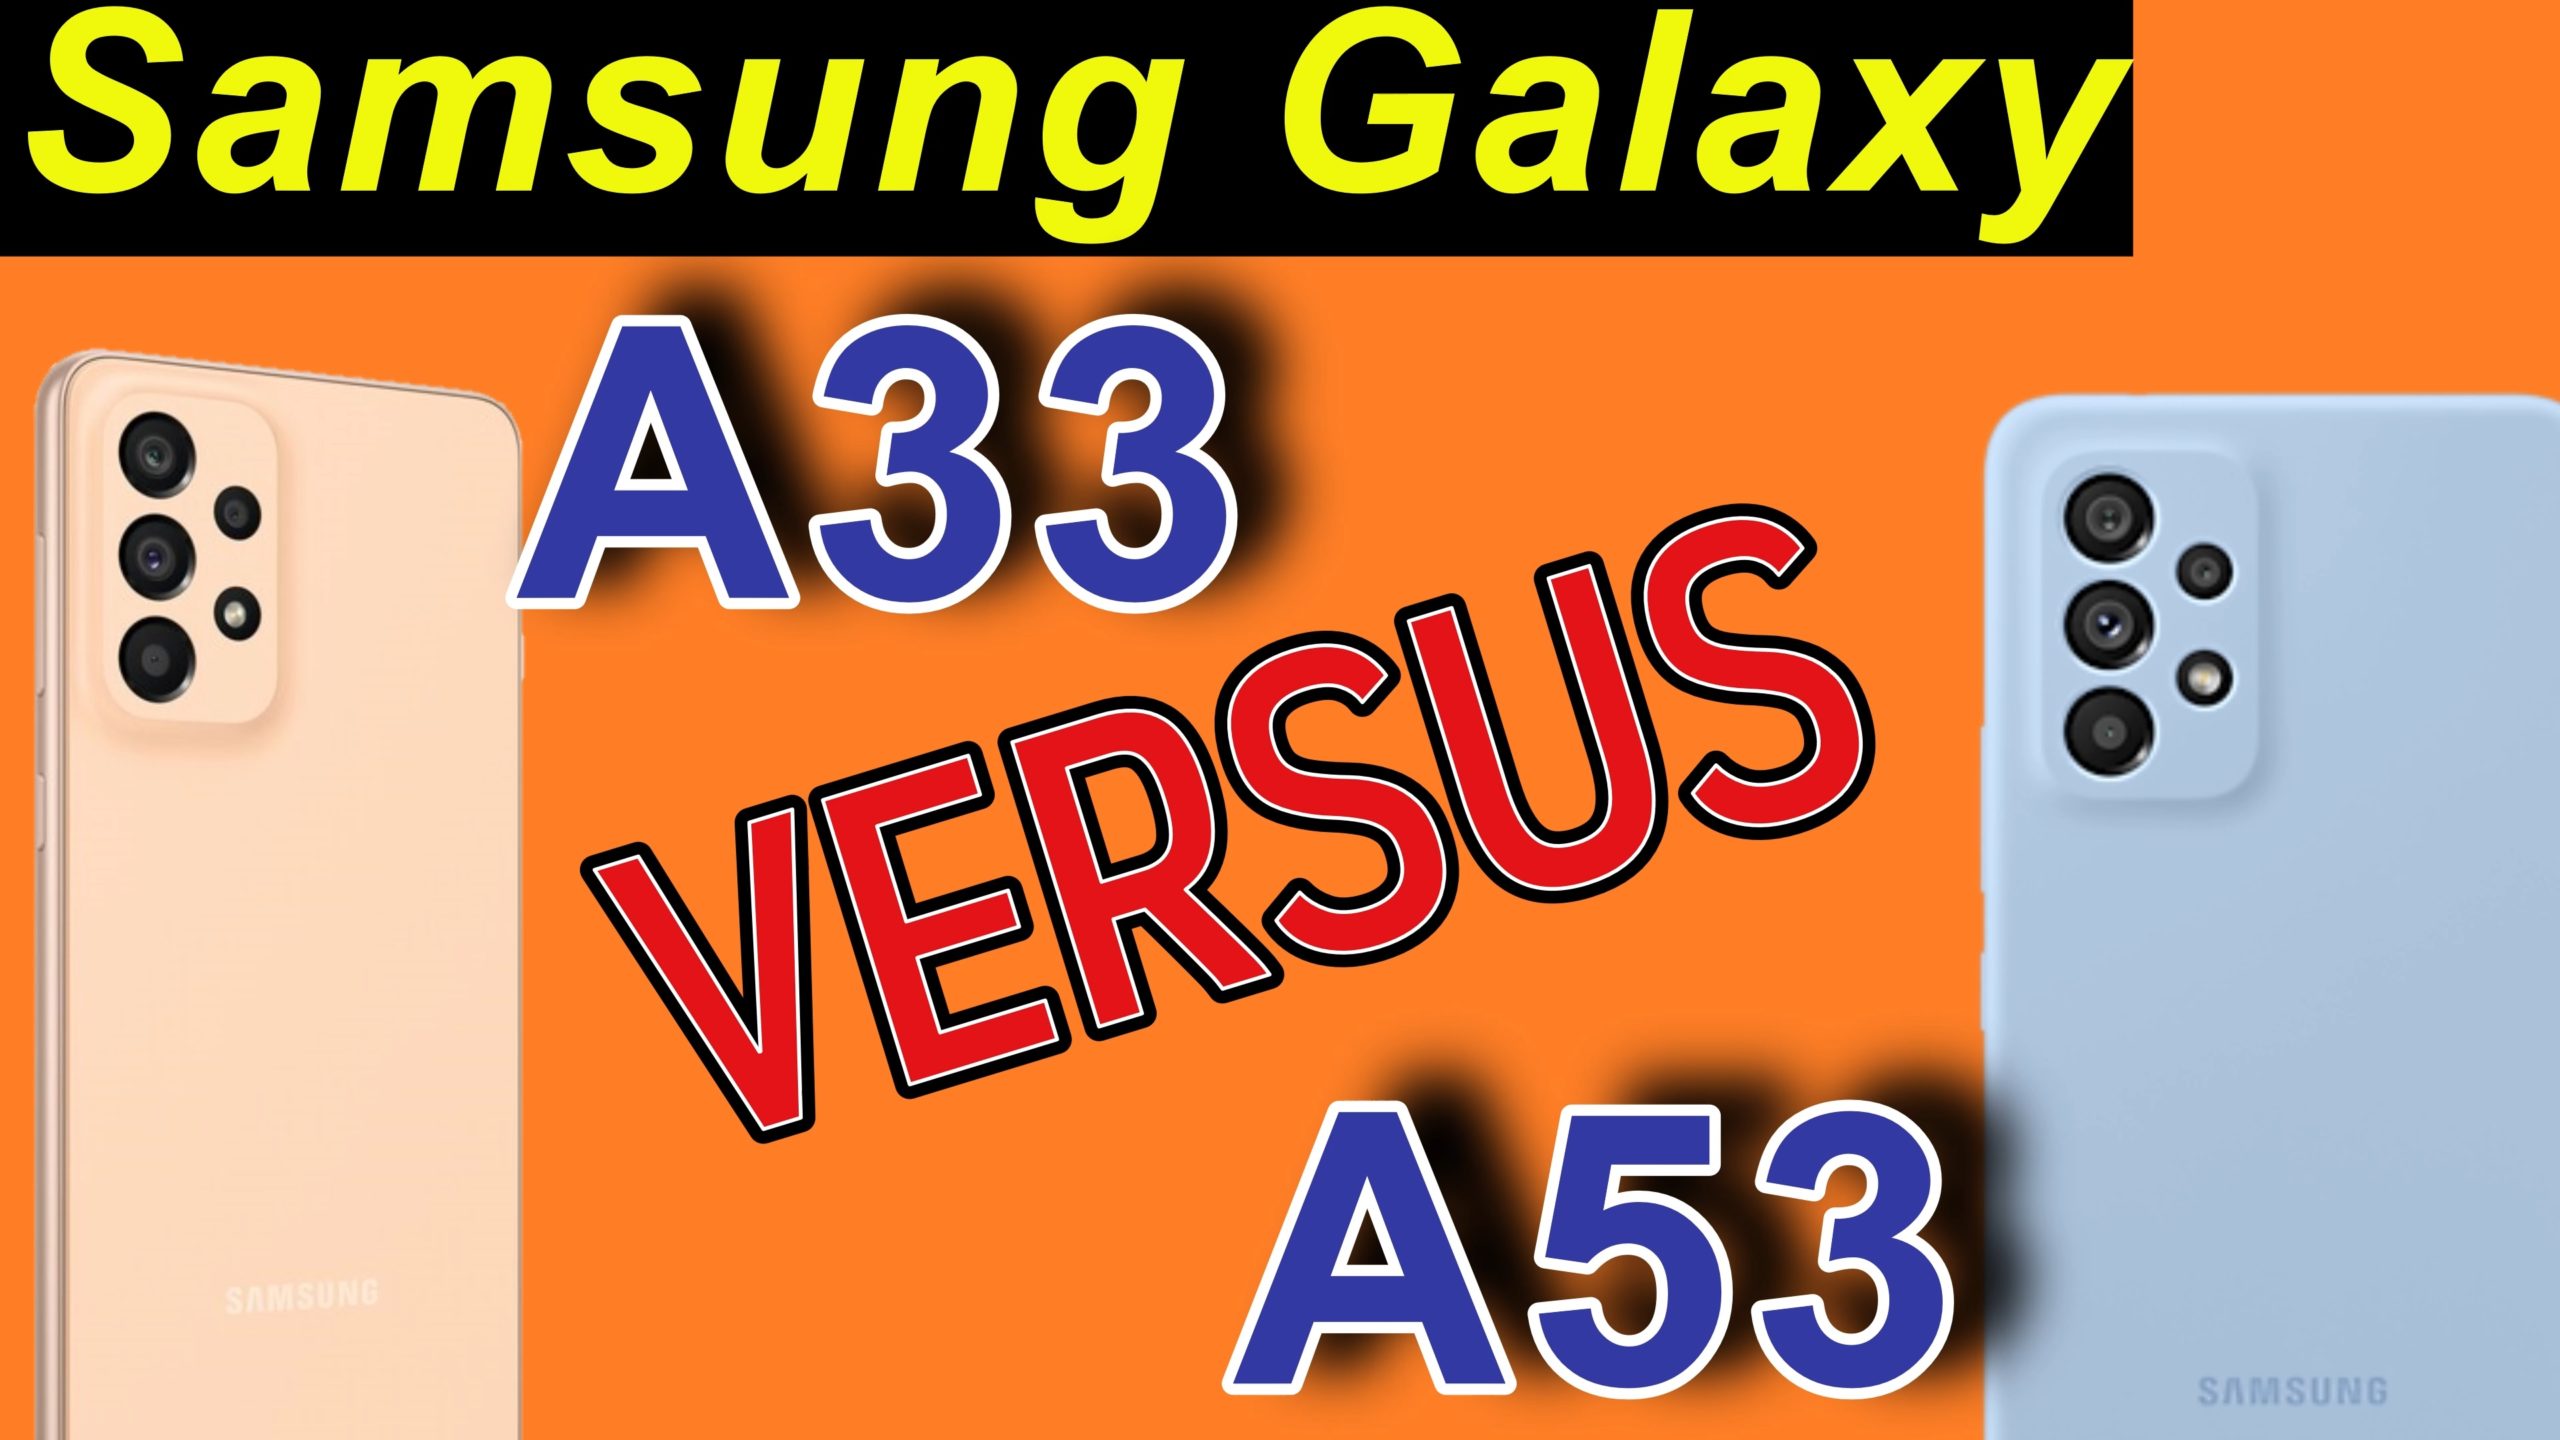 Samsung Galaxy A53 vs. Galaxy A33. Wer gewinnt?